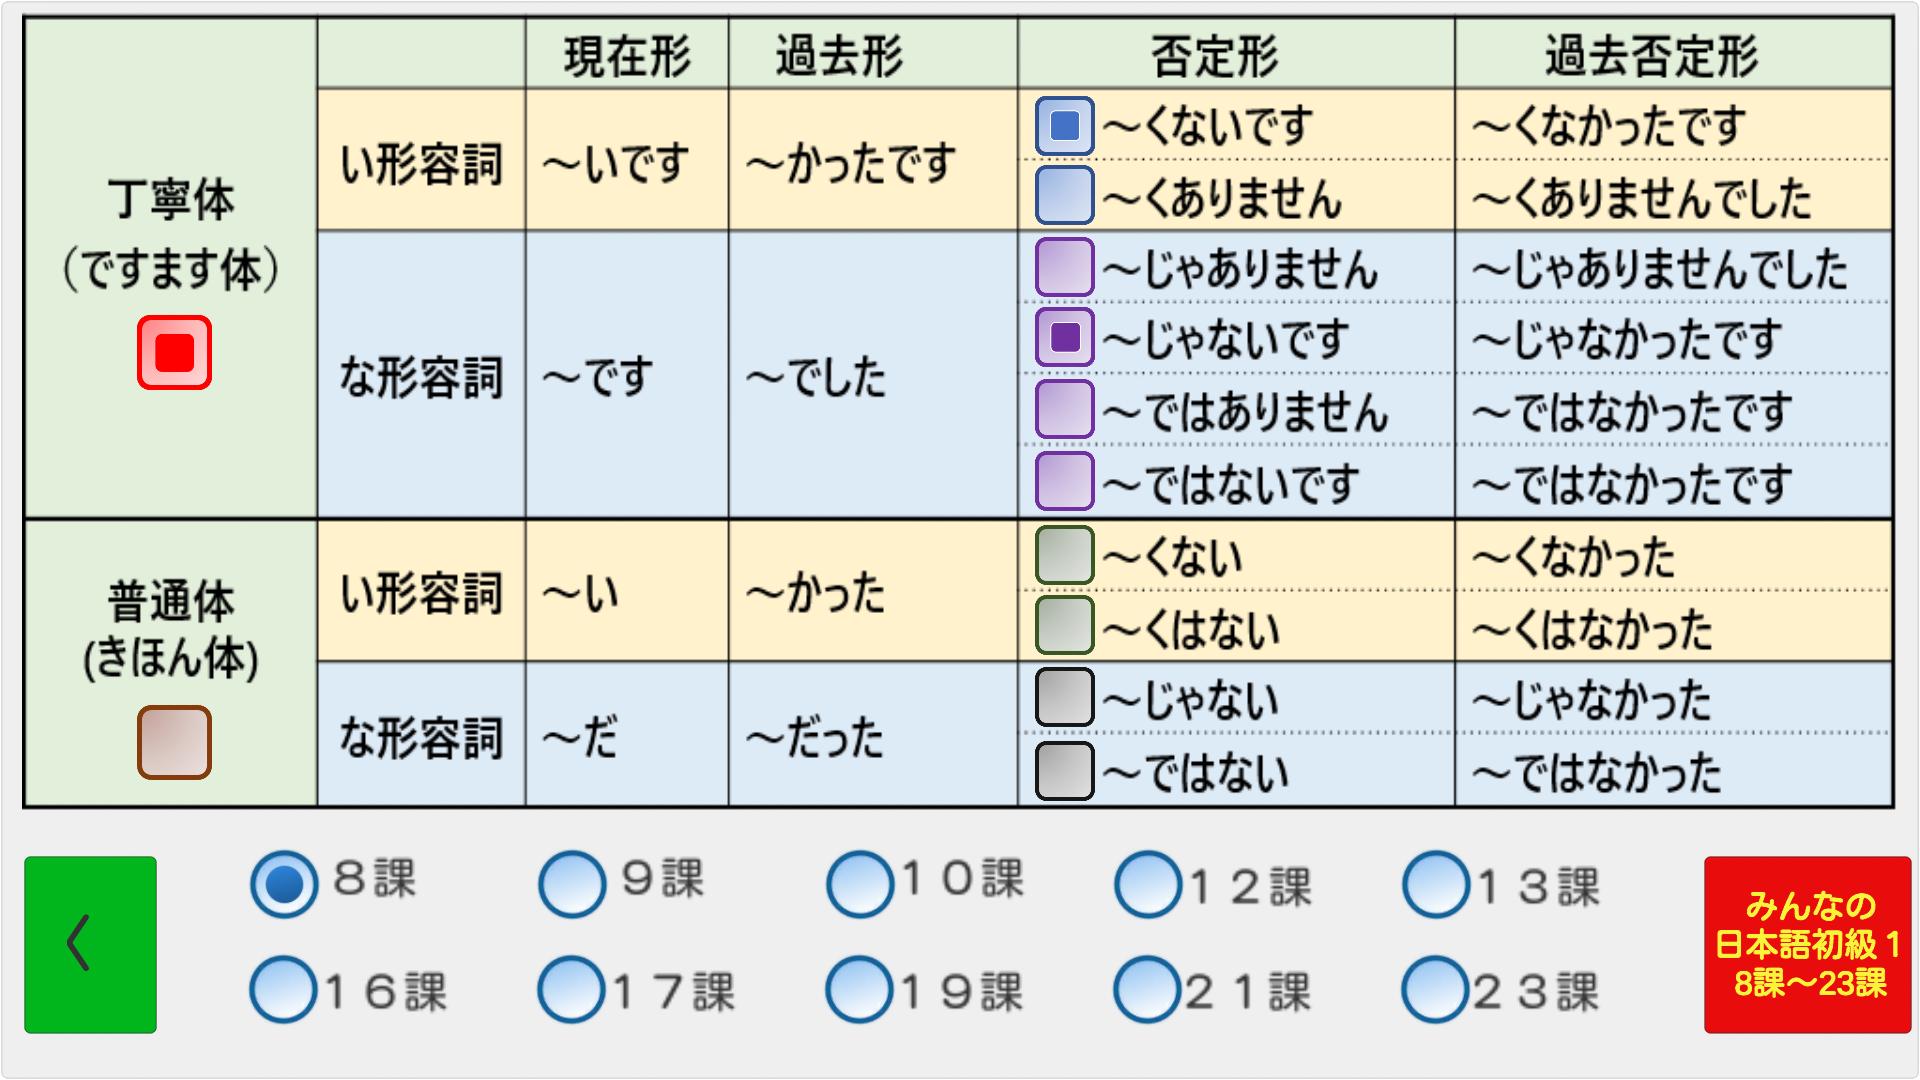 日本語形容詞活用 現在 過去 否定 過去否定 文化初級 4 18課 みんなの日本語 8 23課 For Android Apk Download